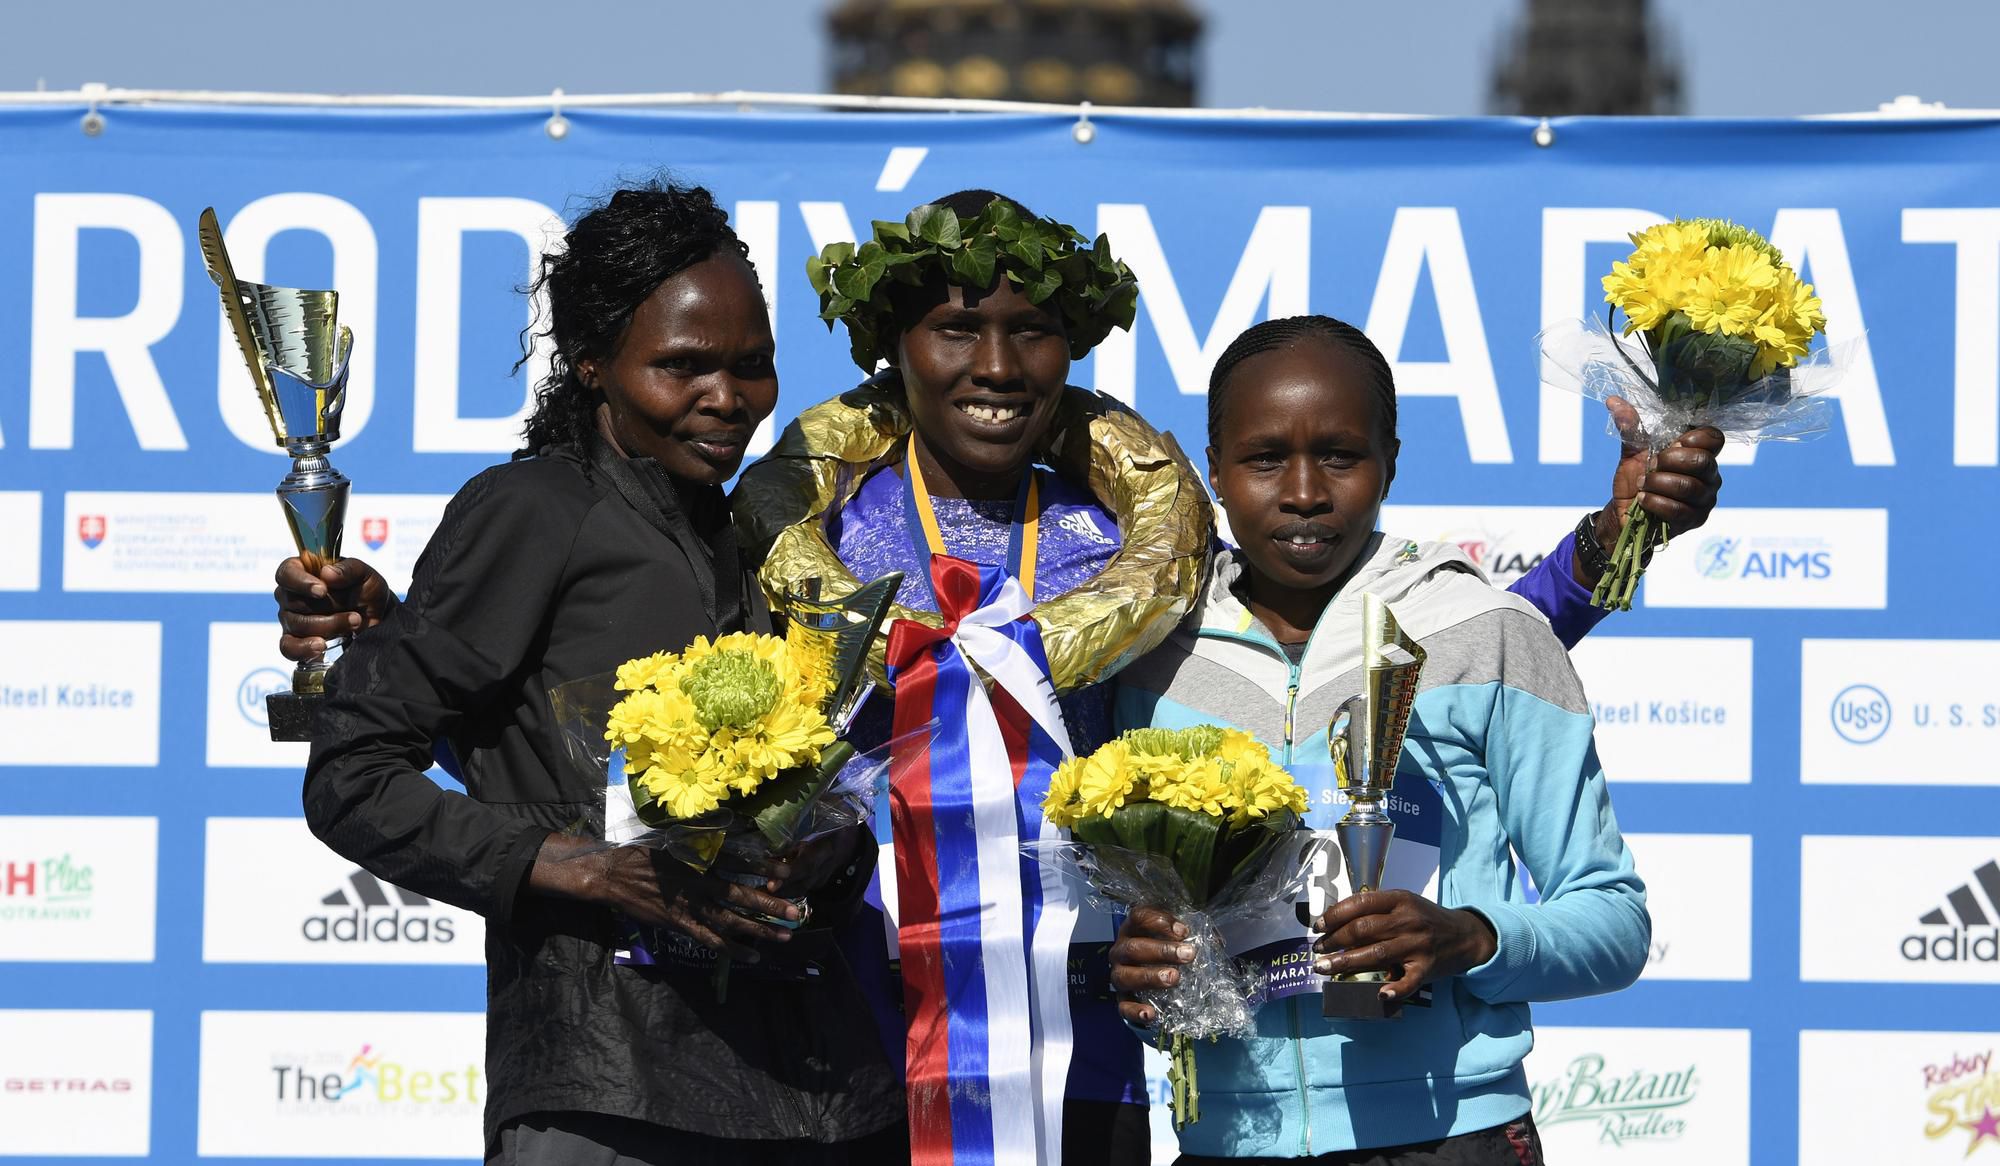 Keňanka Sheila Jerotichová, ktorá zvíťazila v kategórii žien na MMM, druhá skončila jej krajanka Sheila Chepkechová (vľavo) a tretia bola ďalšia Keňanka Emily Chepkemoi Samoeiová.